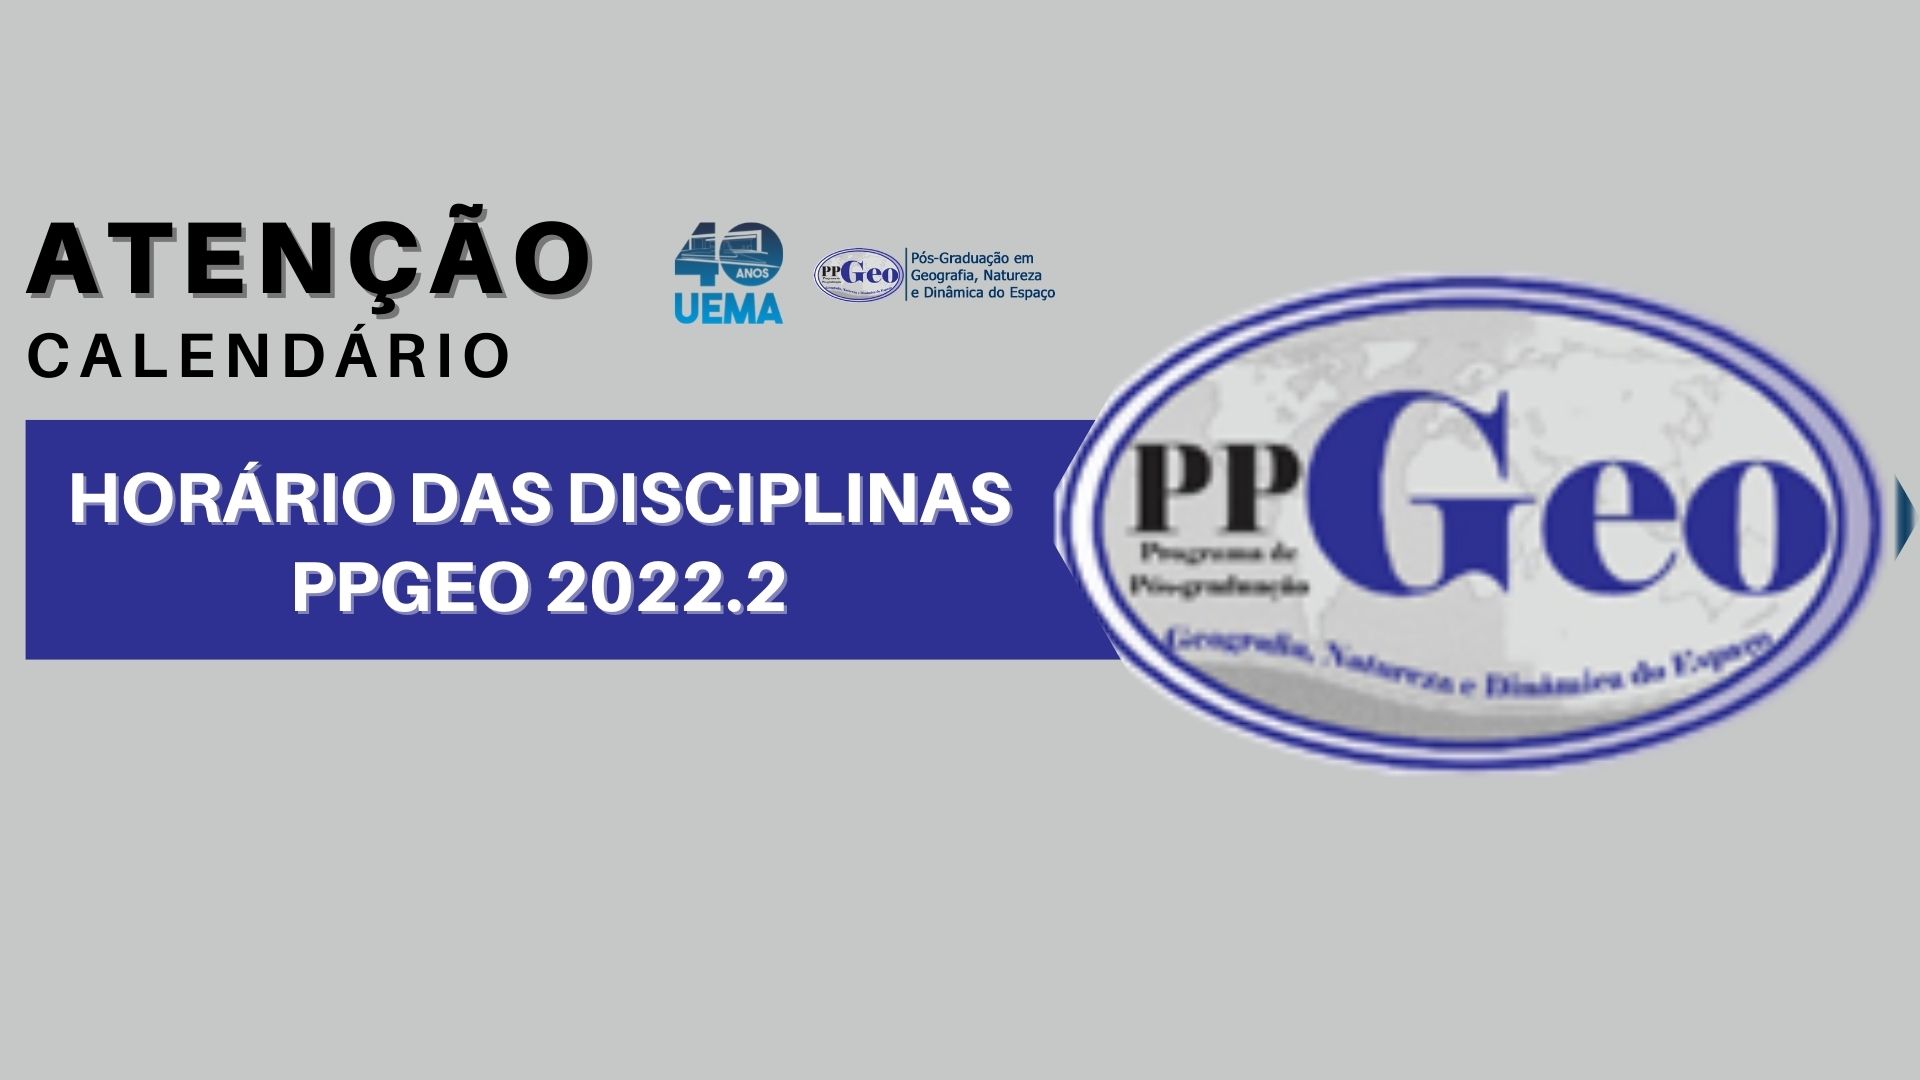 HORÁRIO DAS DISCIPLINAS – PPGEO 2022.2